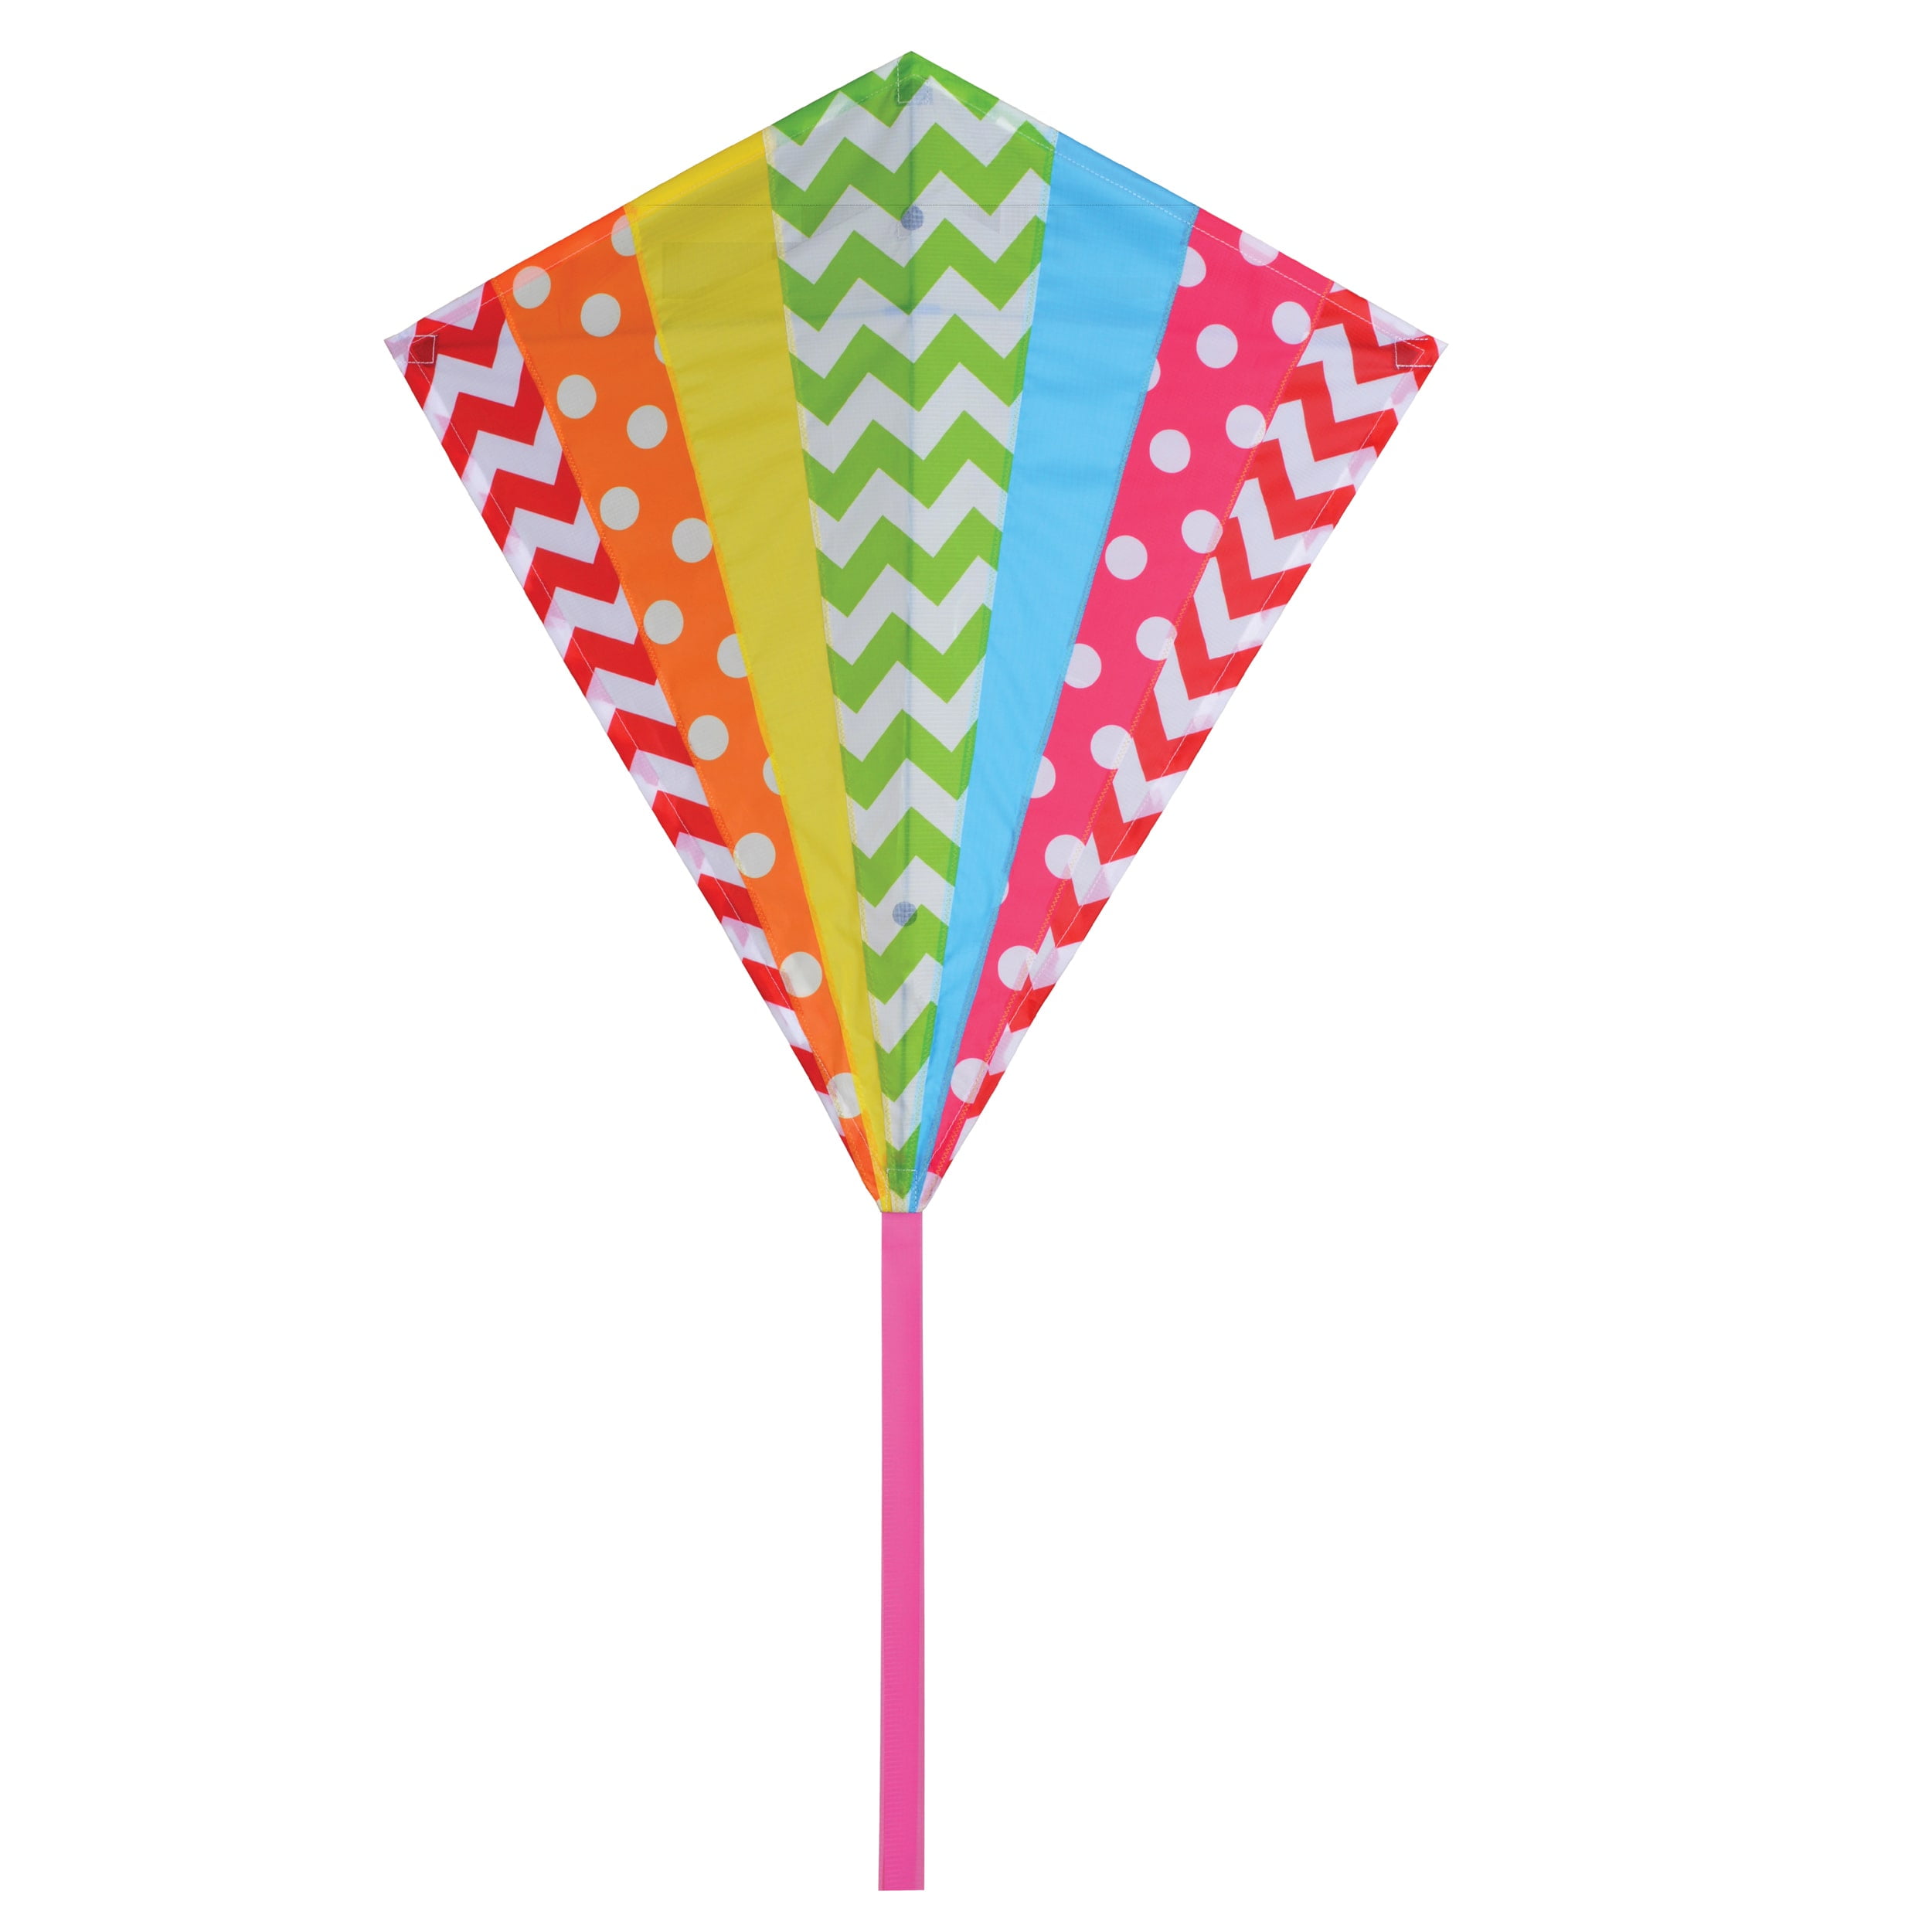 Premier Designs 30 Diamond Kite Hip Rainbow